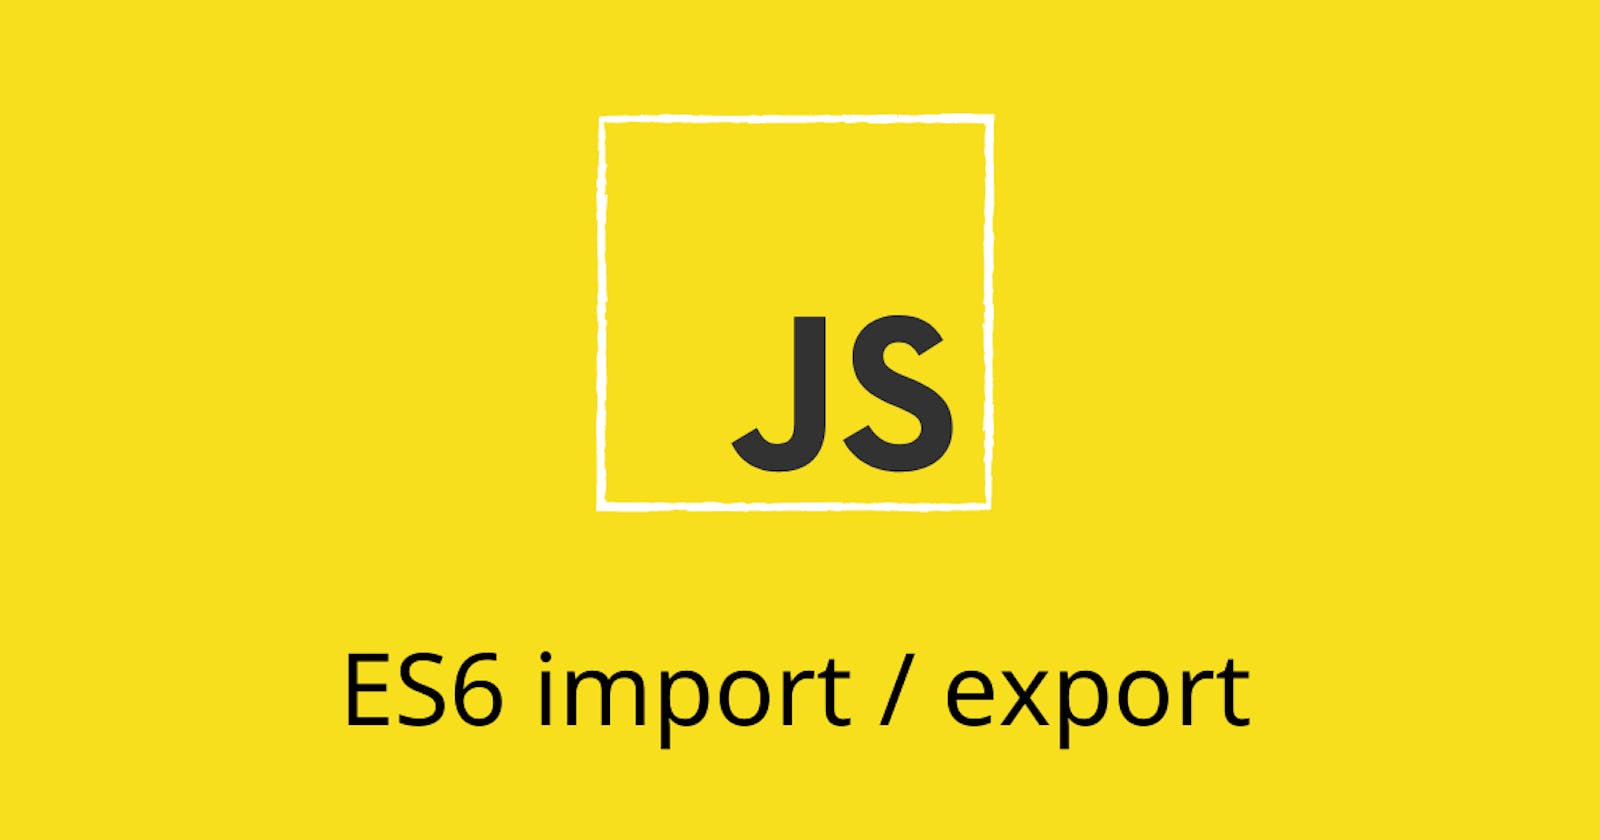 Understanding Import and Export in ES6